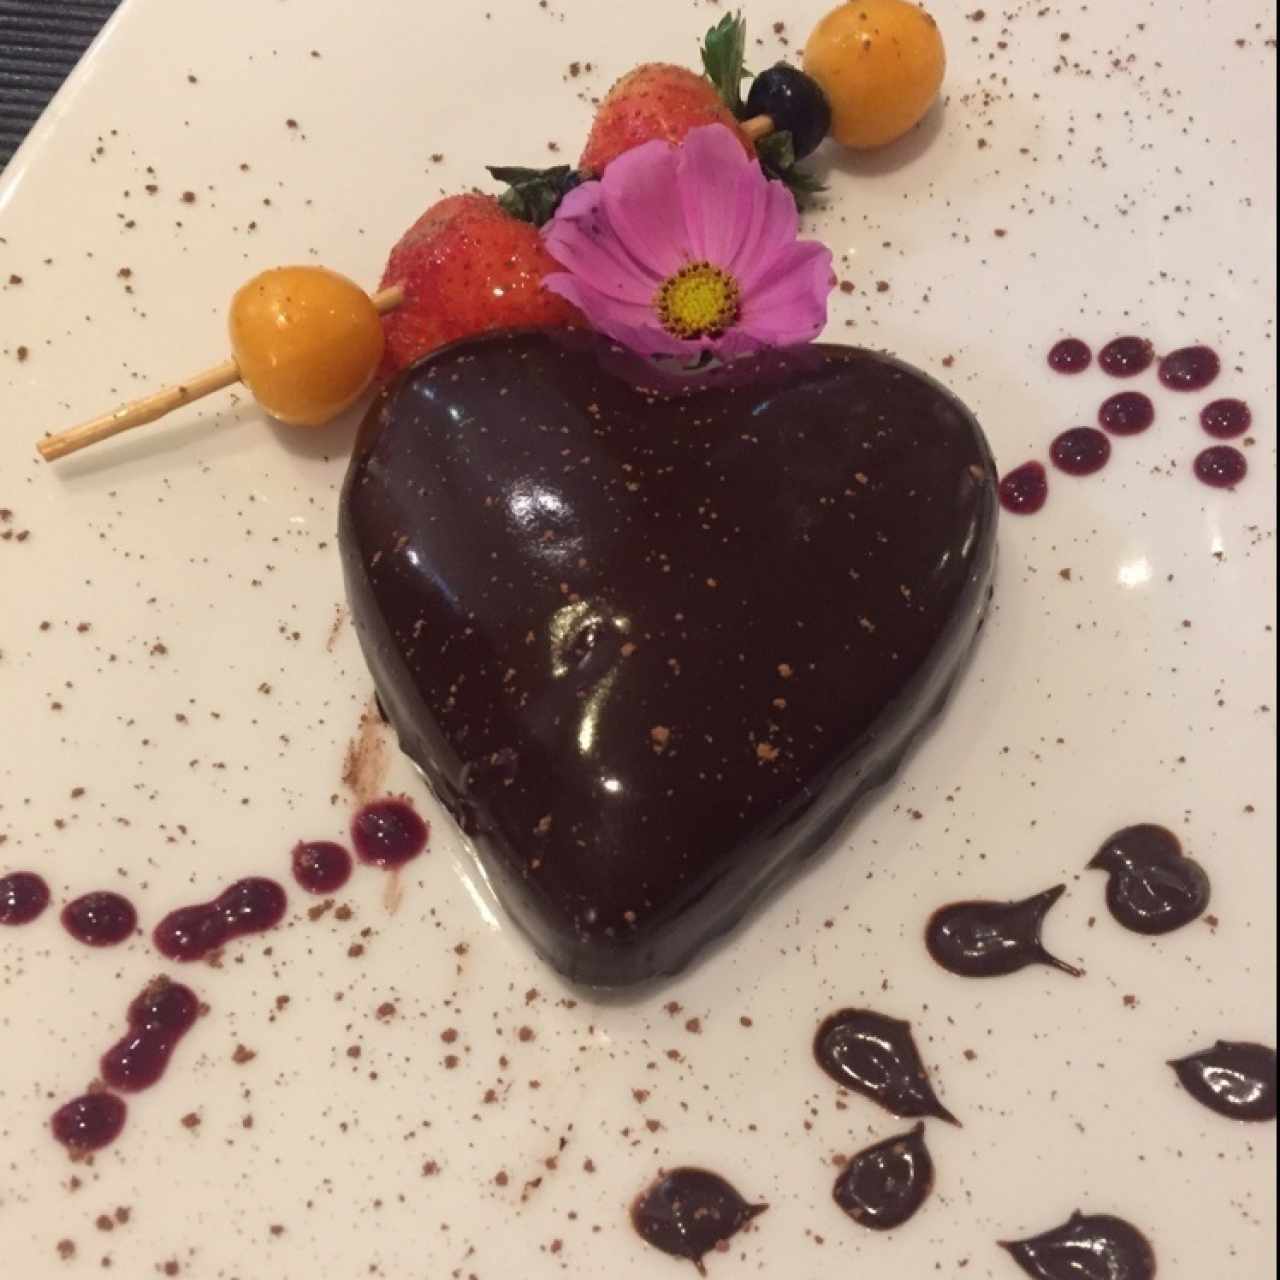 Mousse de chocolate y fresas para San Valentín.